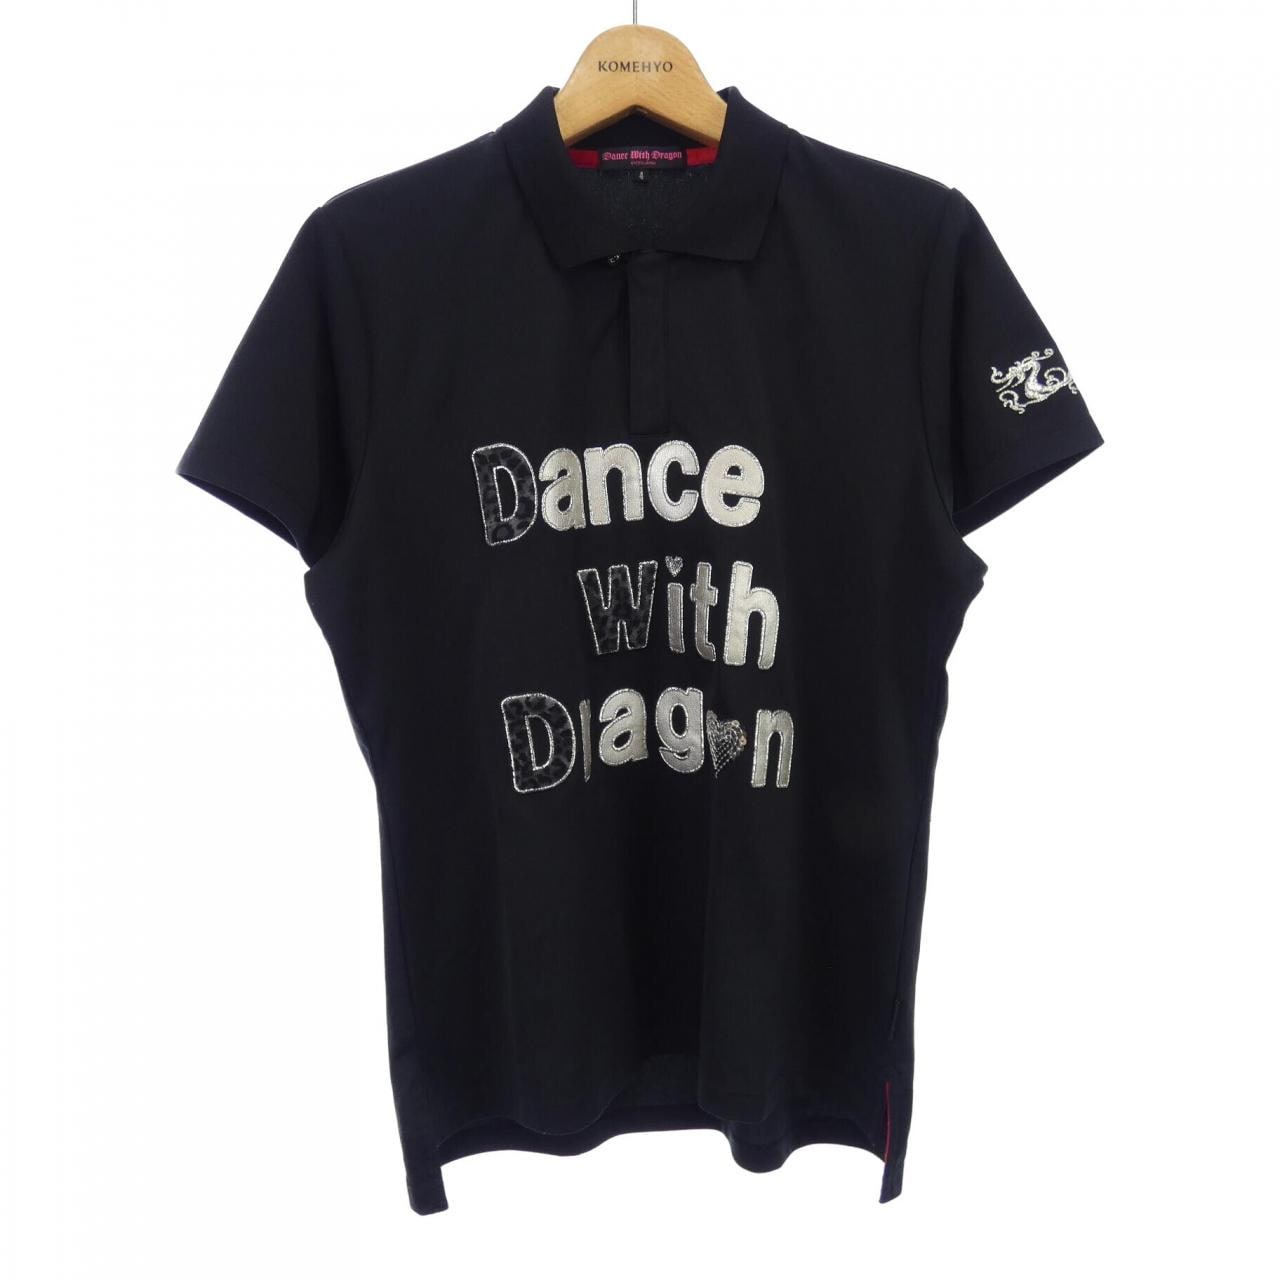 DANCE WITH DRAGON polo shirt